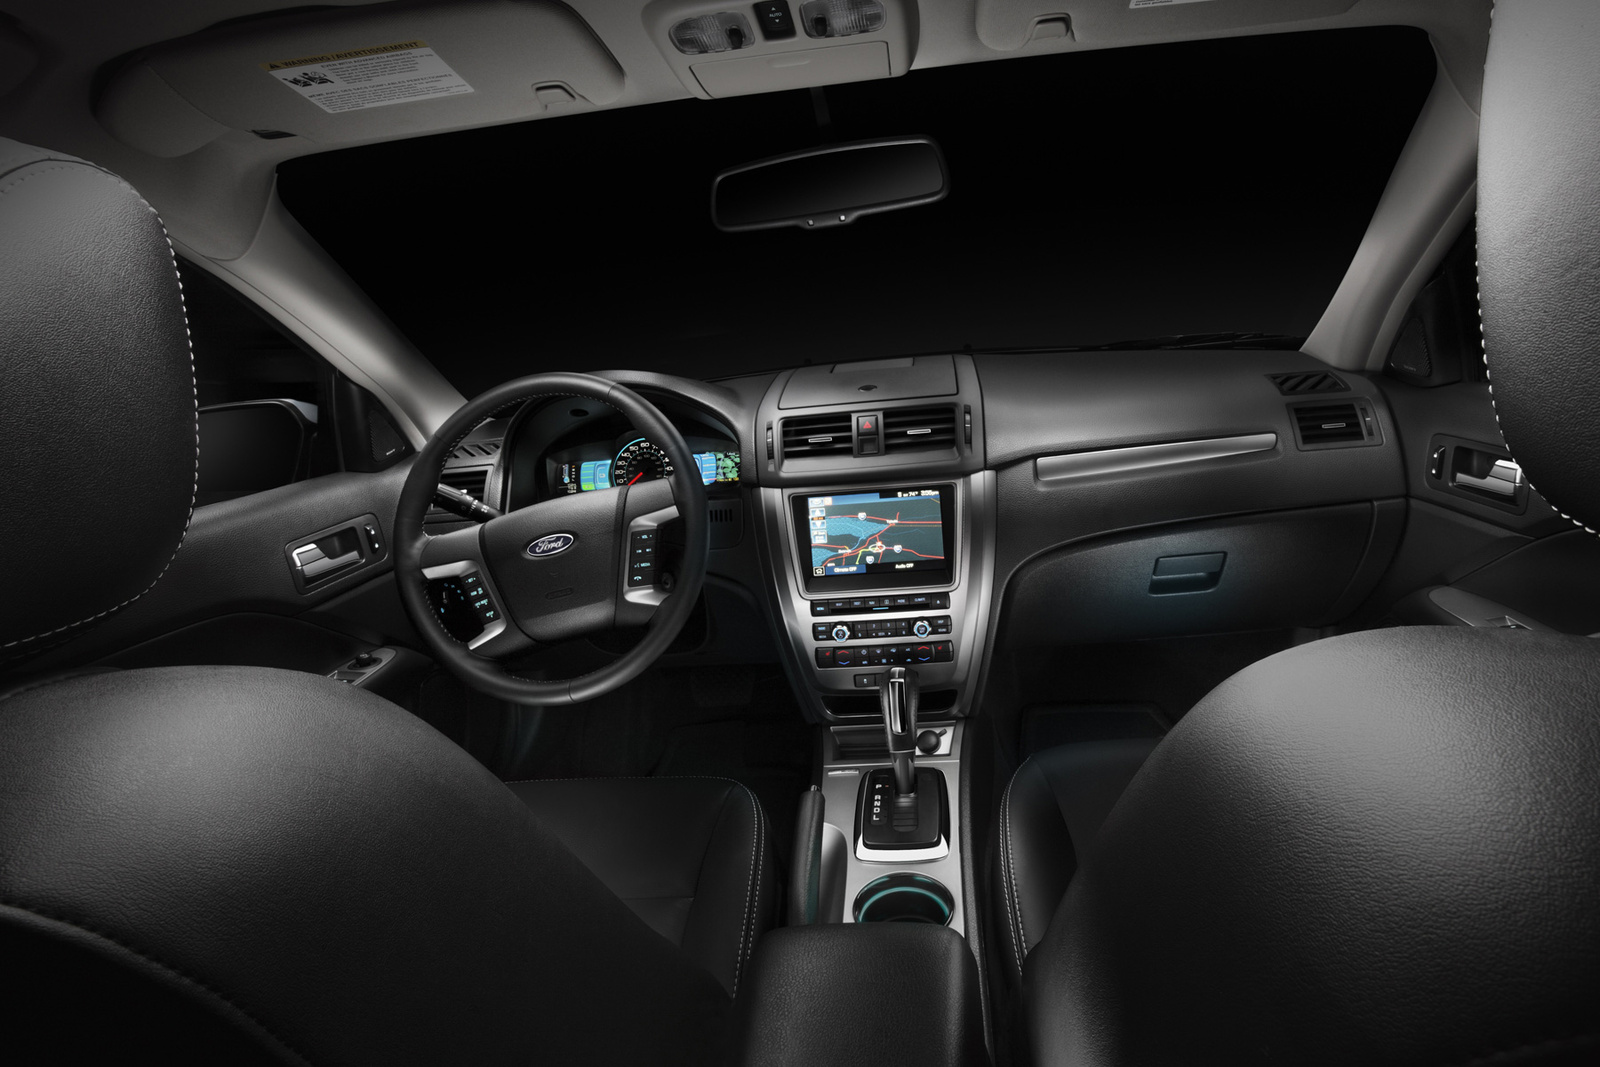 2010 Ford fusion interior dimensions #8